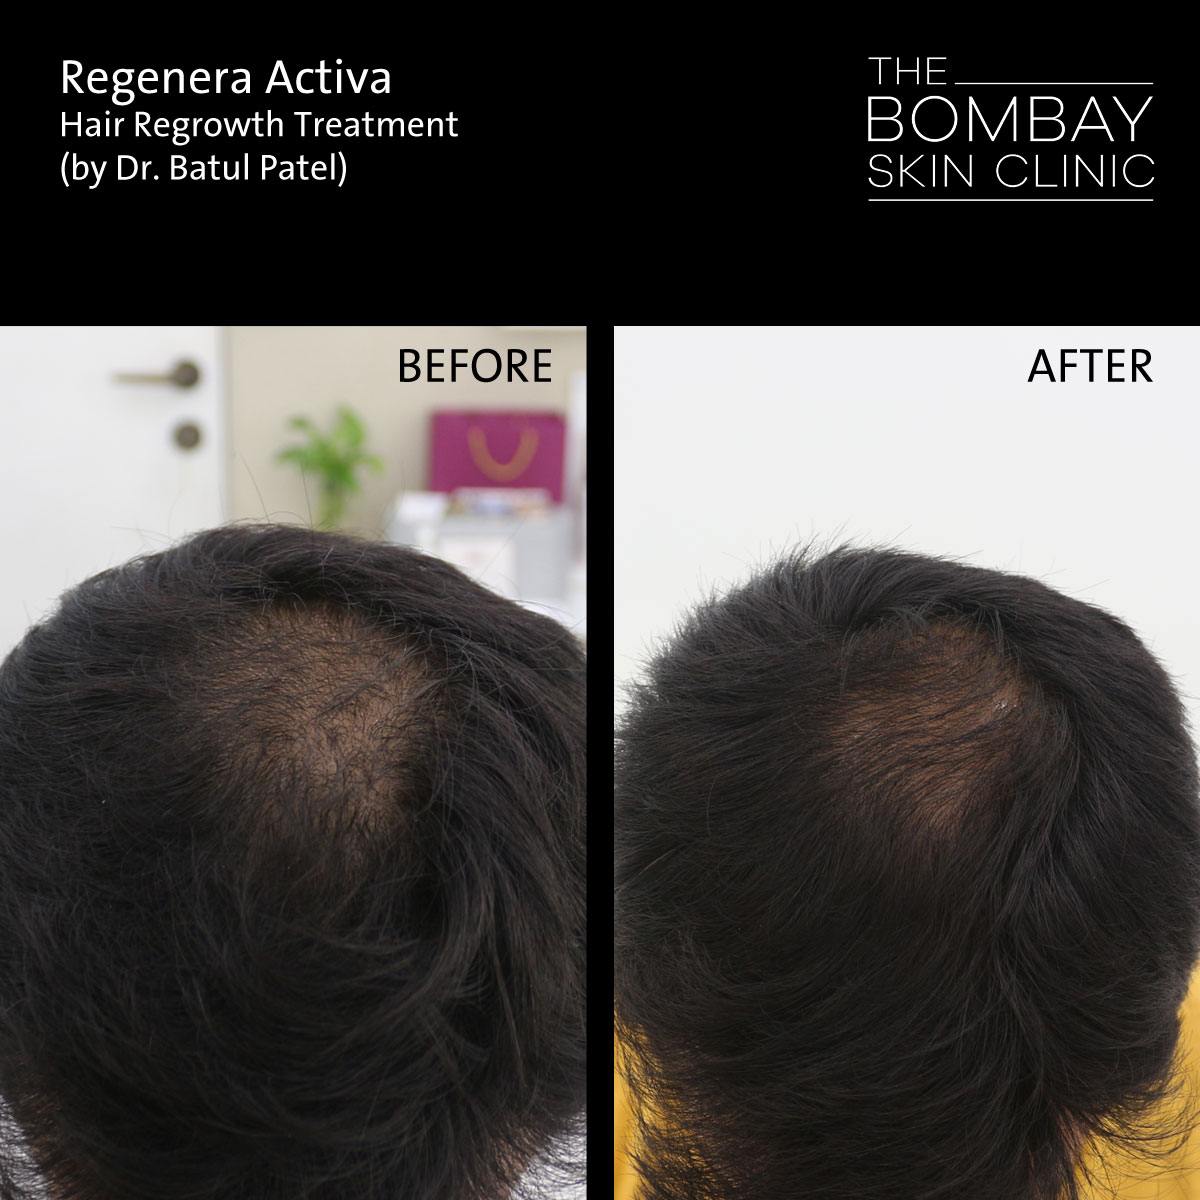 Regenera Hair Loss treatment